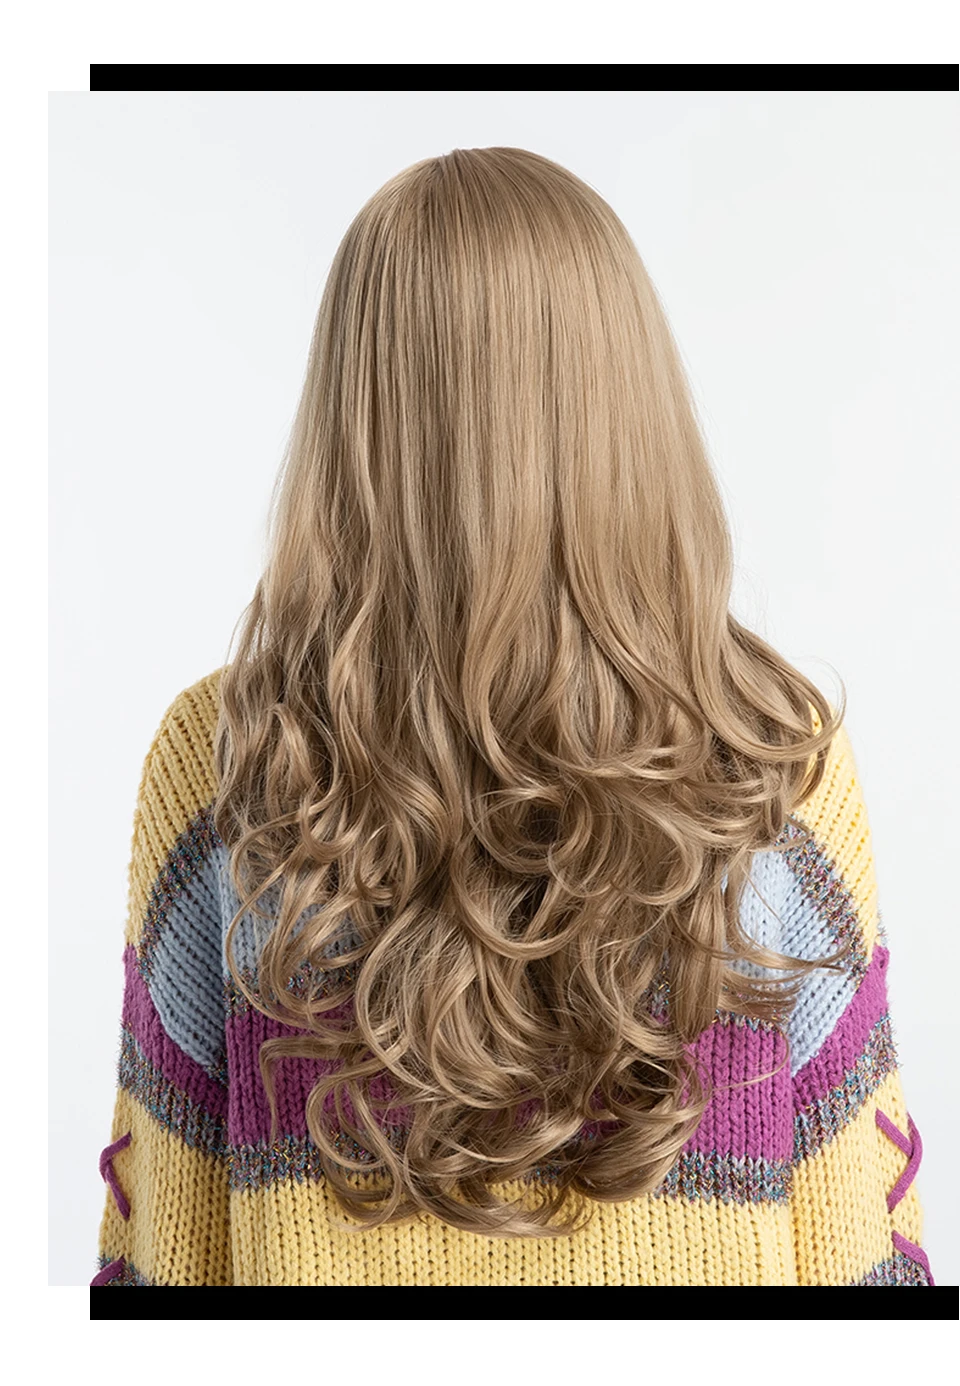 Inhair Cube 26 дюймов женские парики длинные натуральные волны синтетический слоистый стиль волос светильник коричневый с полным парики